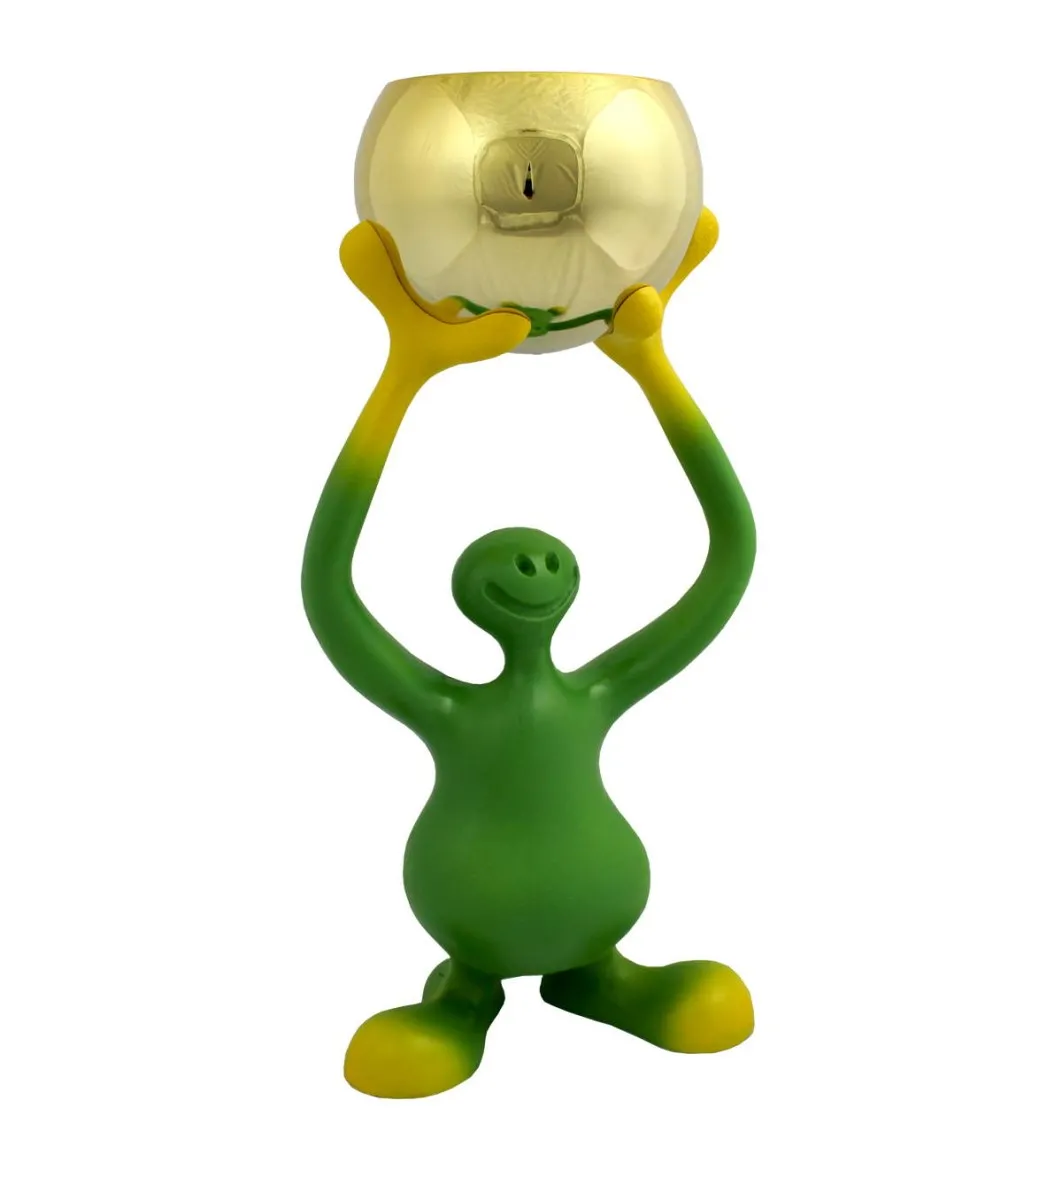 Eksklusiv Bibo-trofæfigur i grøn og gul